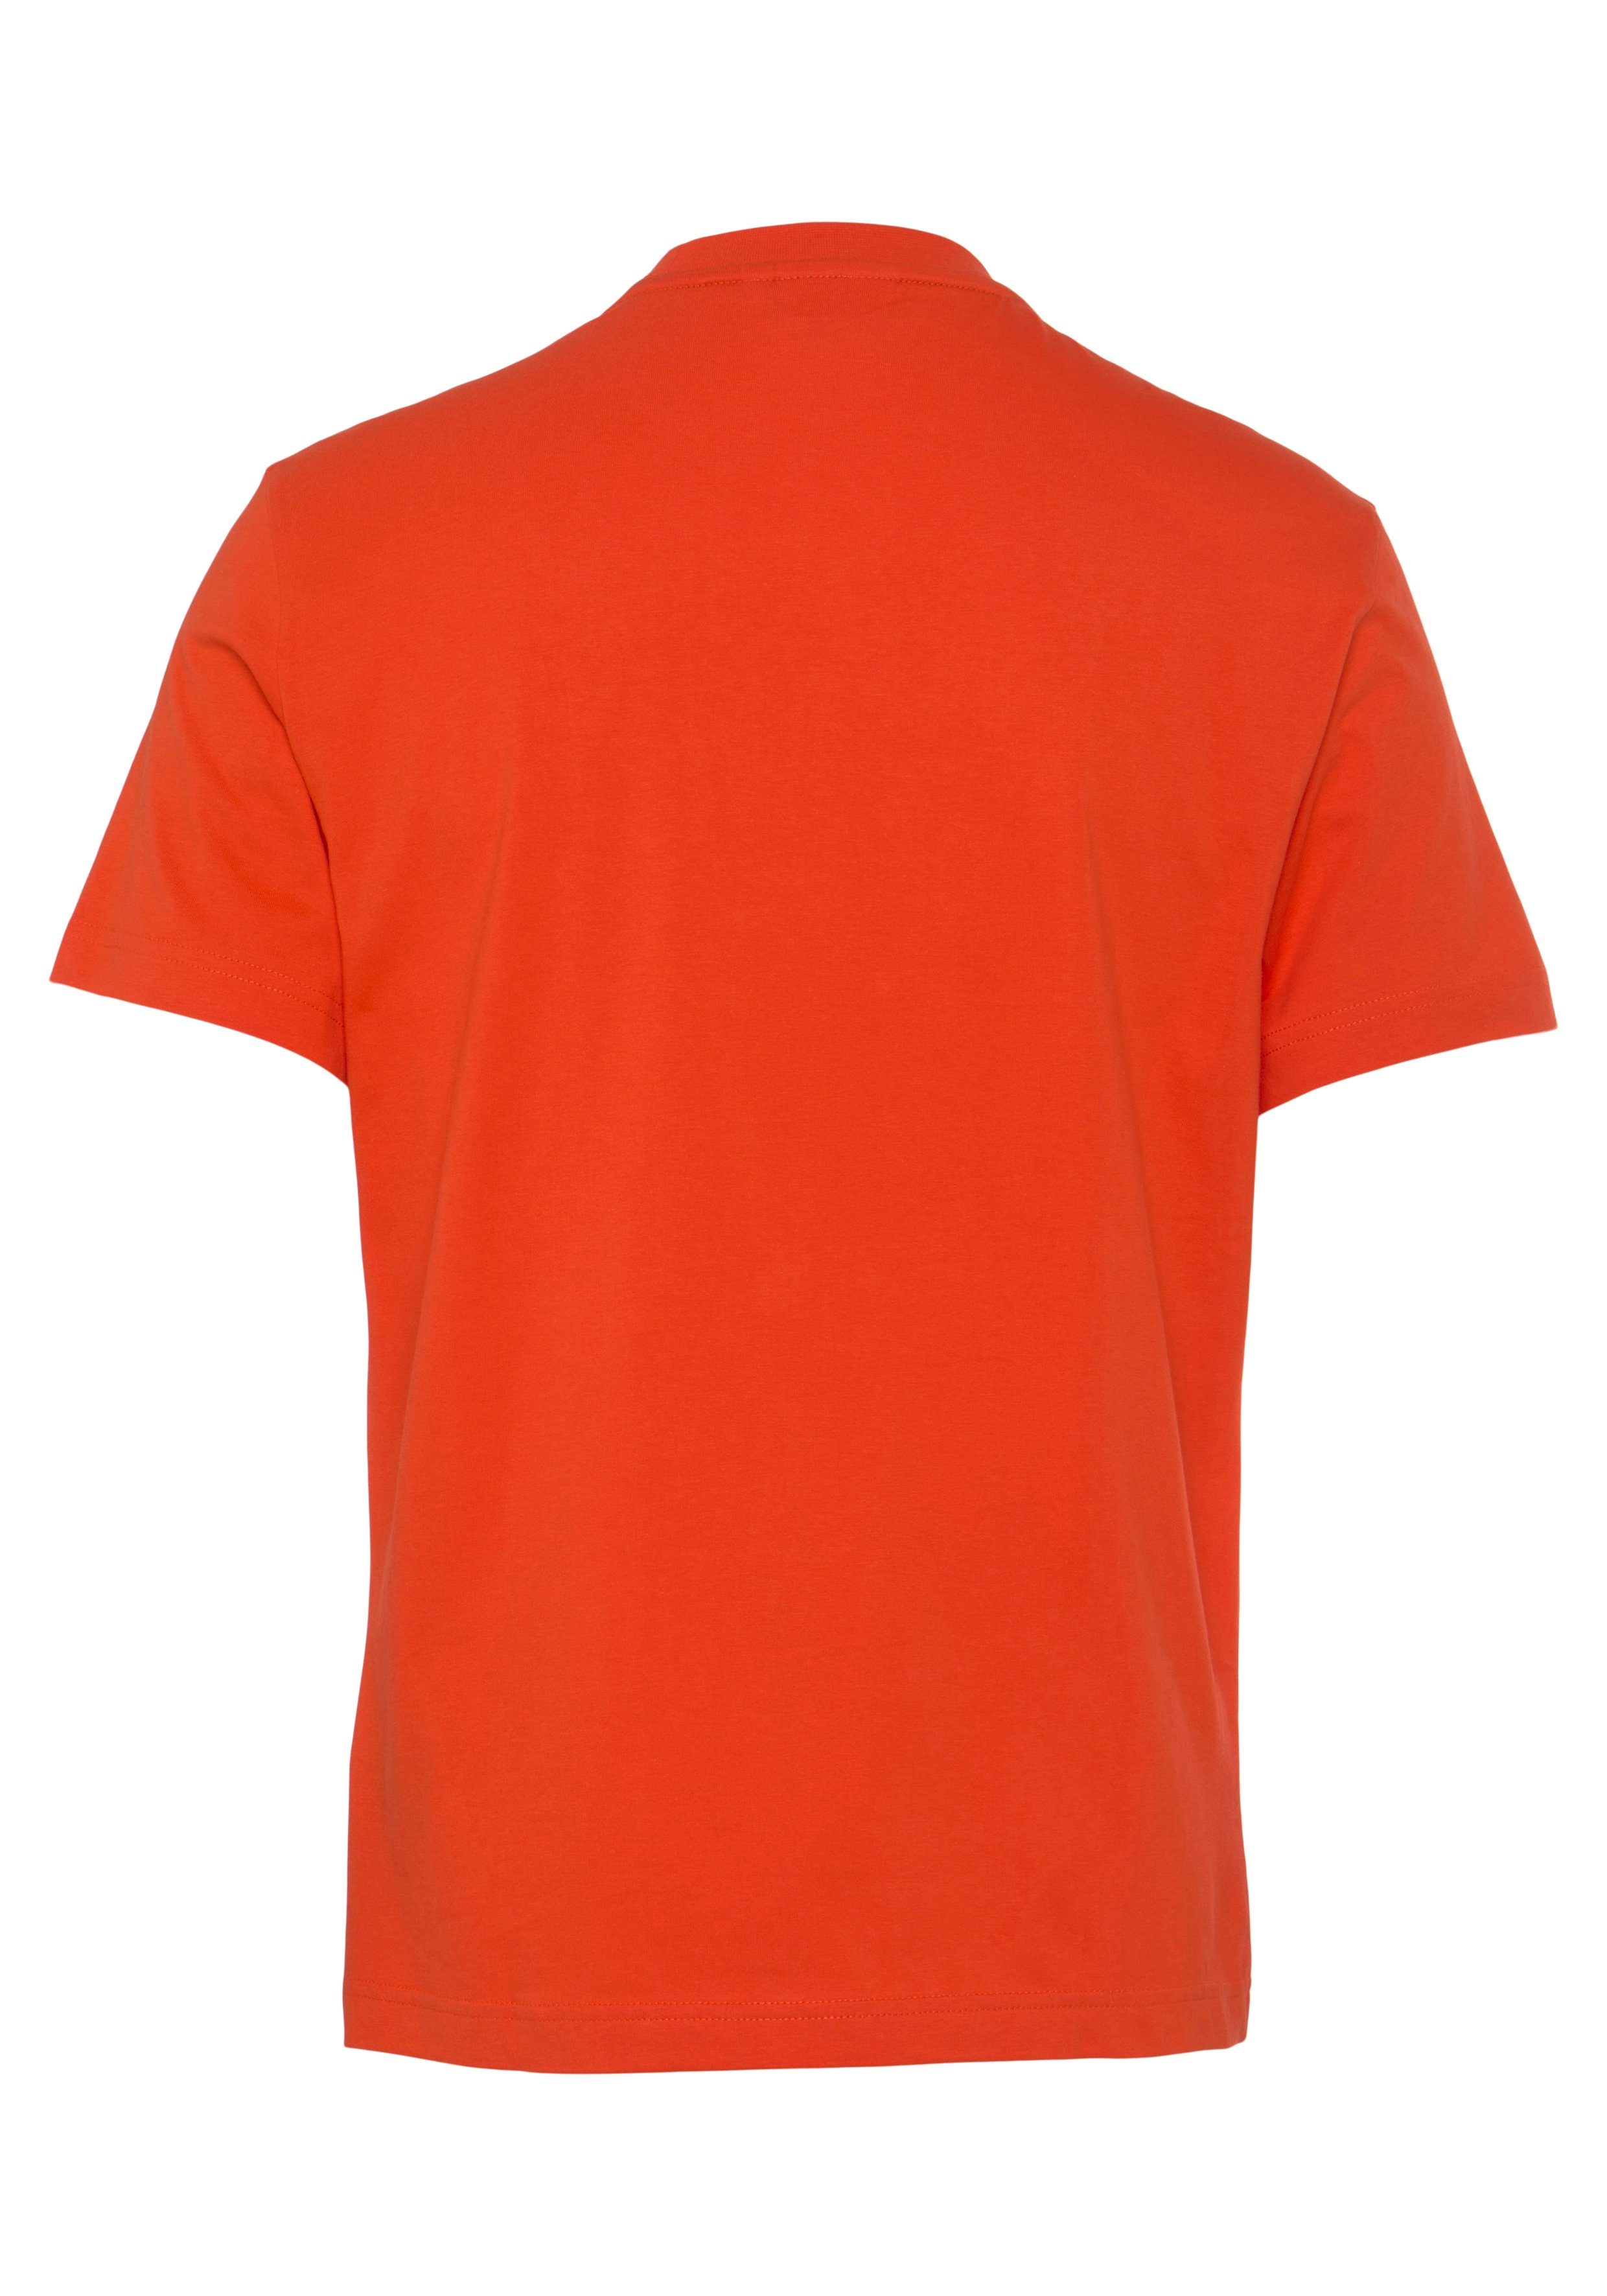 LOGO LINE mit T-Shirt Calvin CONTRAST Spicy Klein T-SHIRT Orange CK-Logodruck